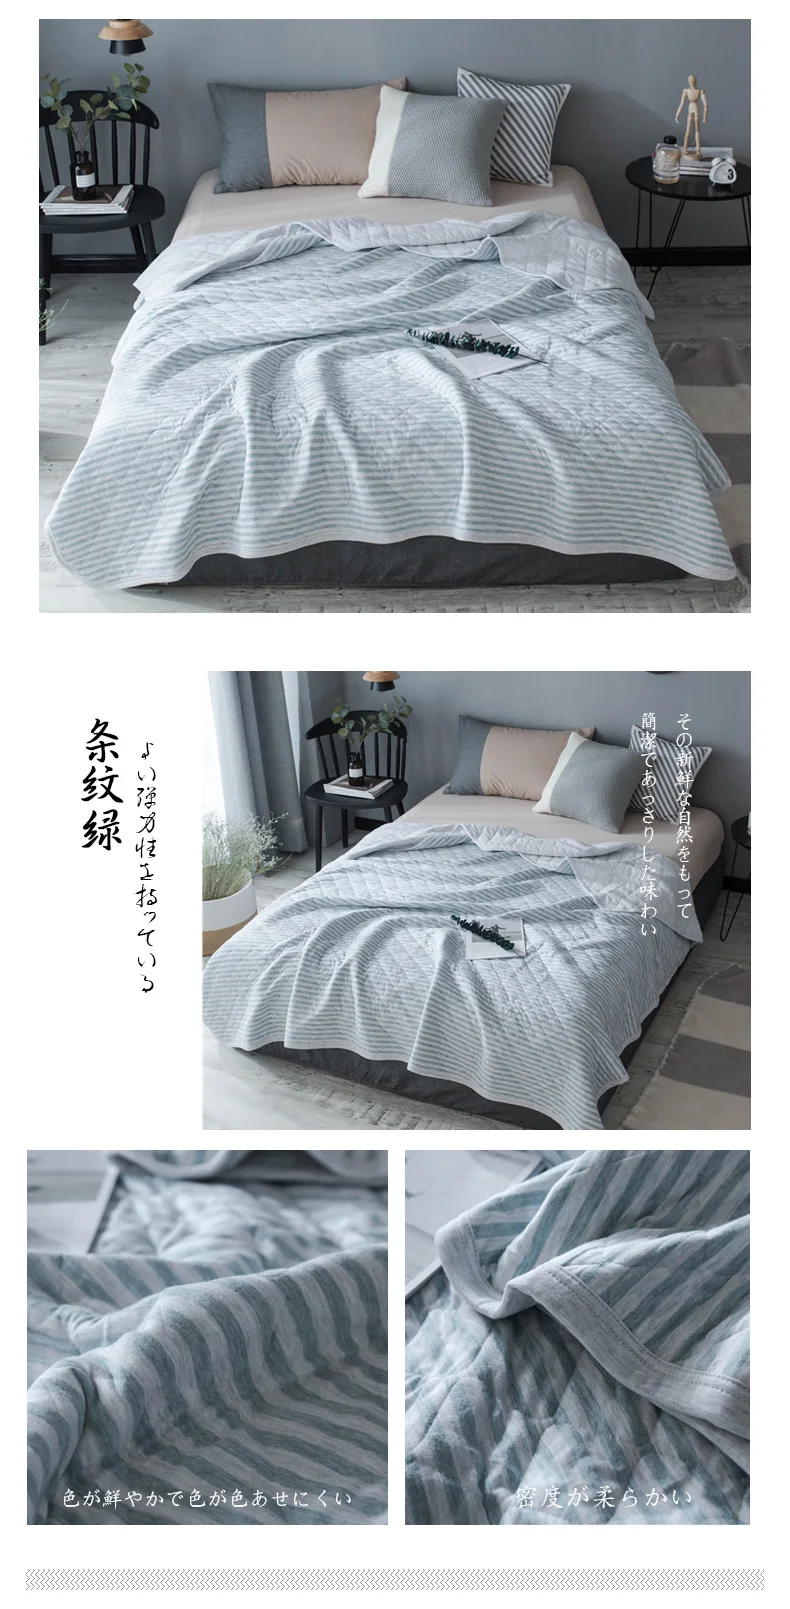 Полосатый Скорпион хлопок жаккардовое стеганое одеяло, одеяло для кондиционирования воздуха окружающей среды для взрослых и детей